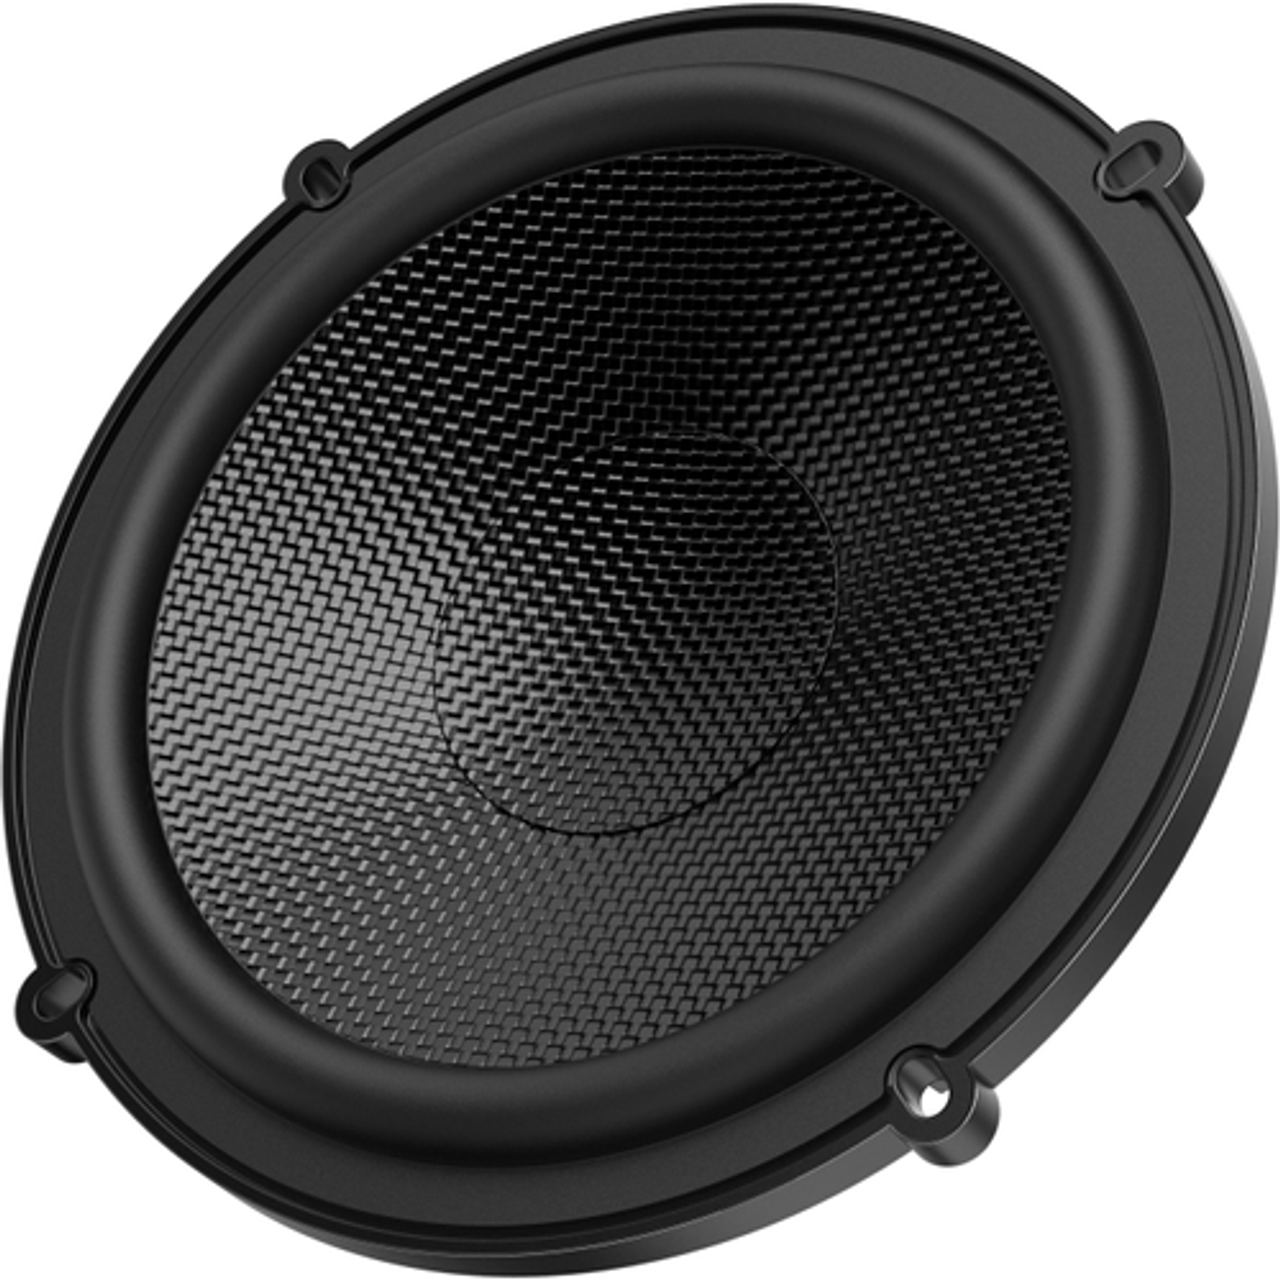 JBL - 6-1/2” Component Premium Speakers - Black